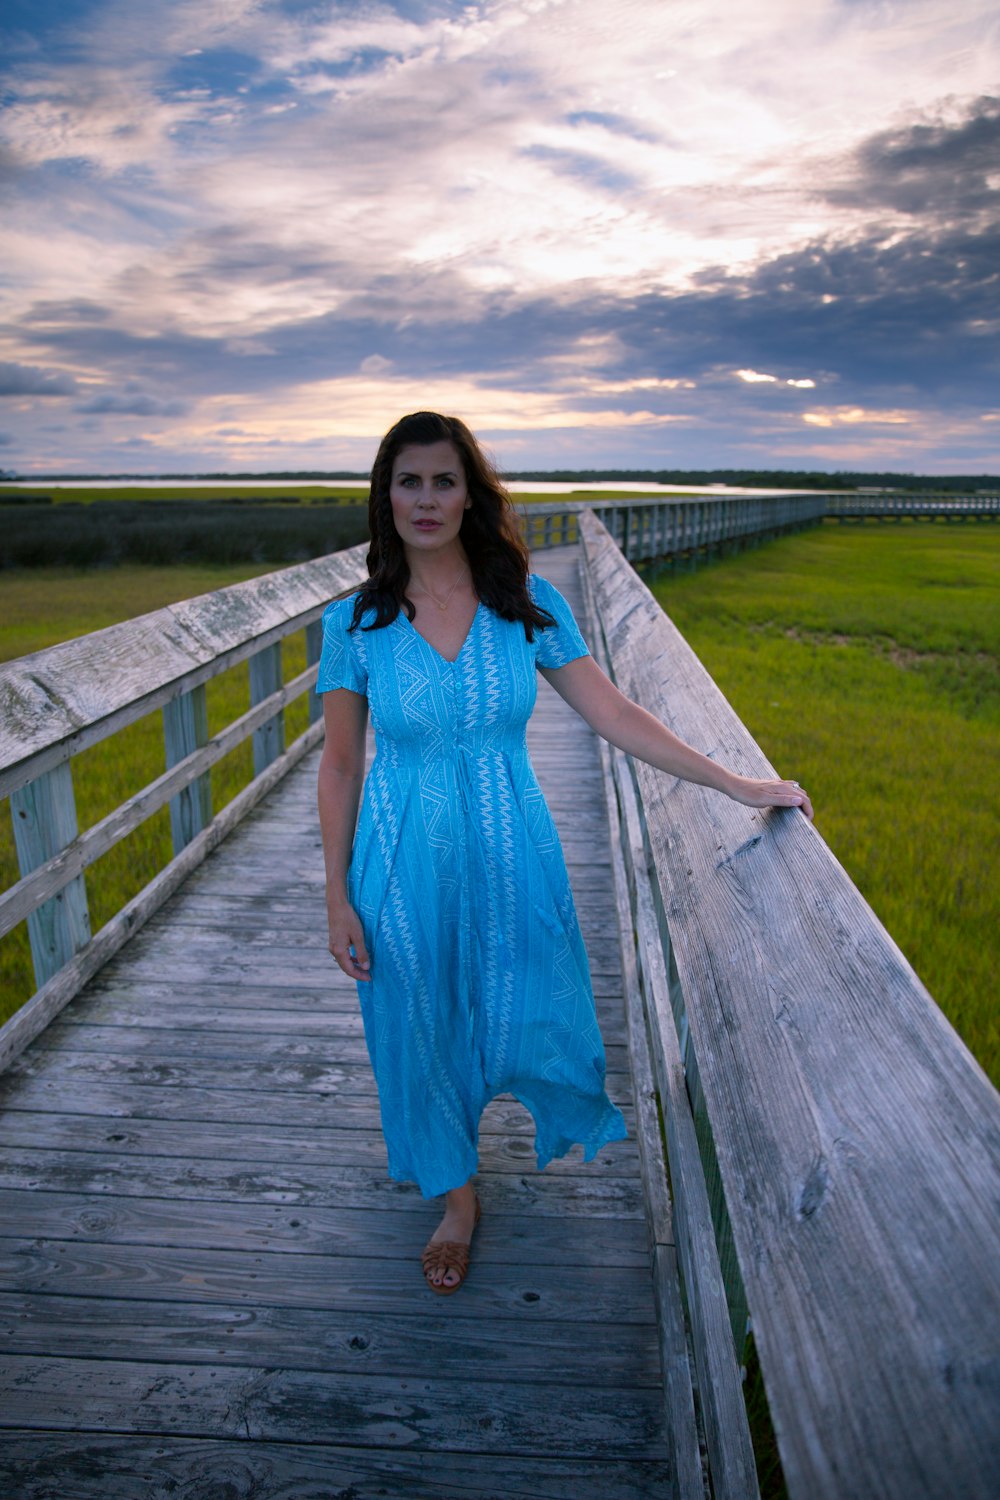 woman in blue dress standing on wooden bridge